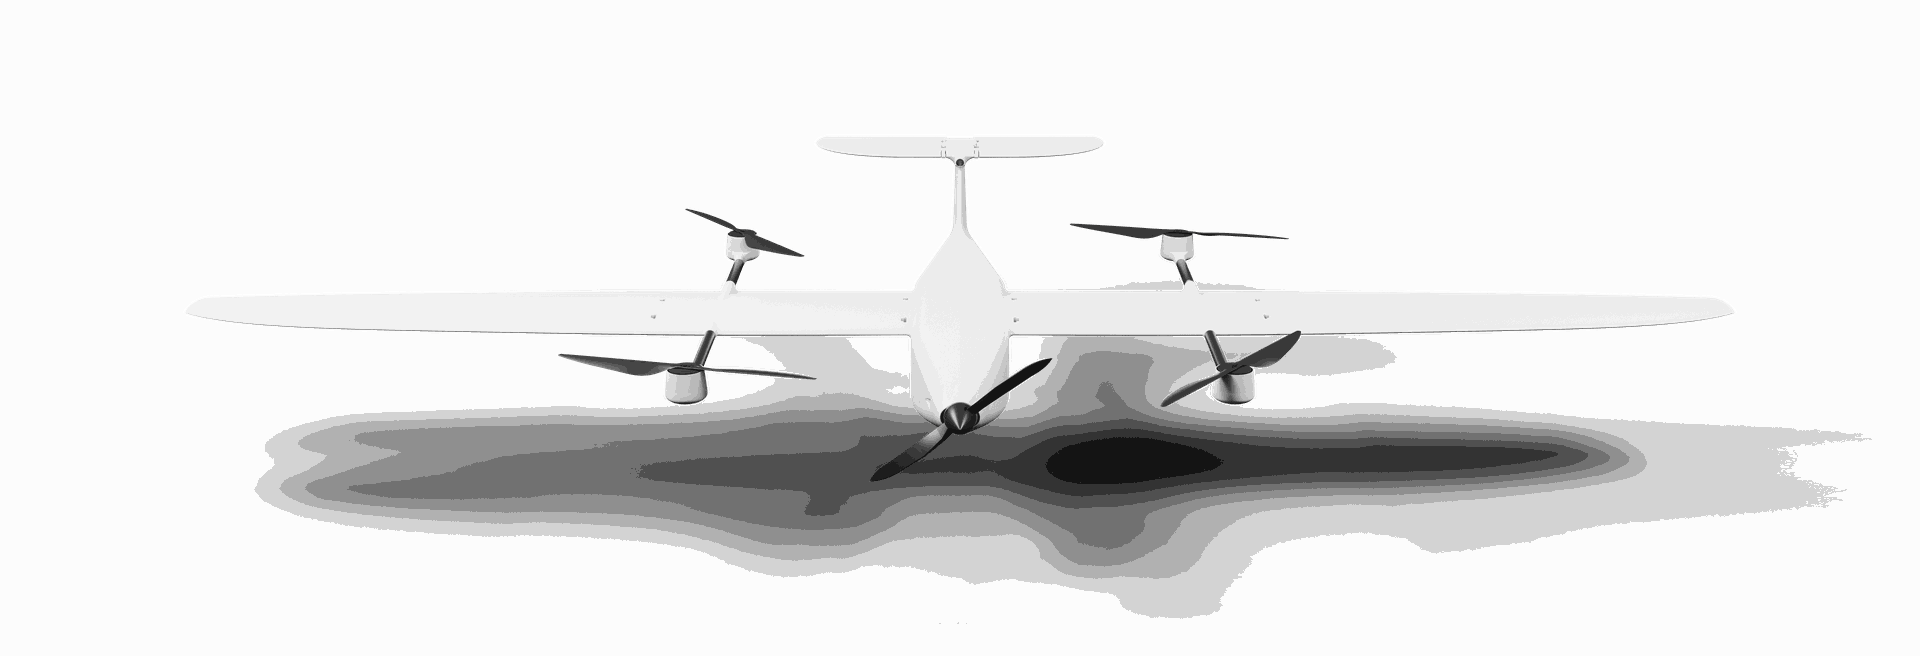 samoloty bezzałogowe EkoSky 2.0 zdjęcie maszyny z przodu